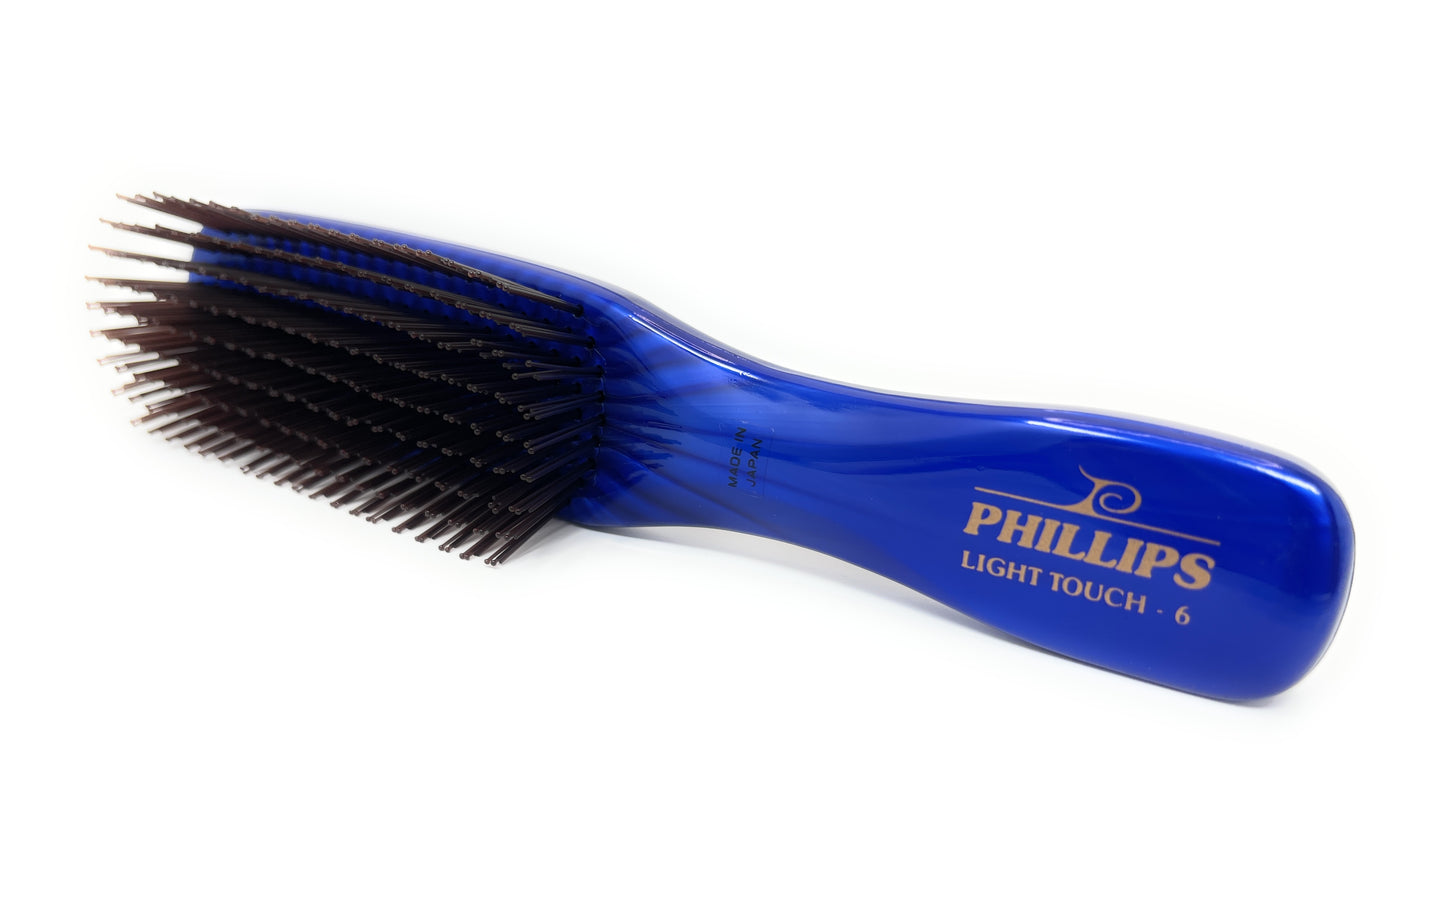 Phillips Brush Light Touch 6 Gem Nylon Bristle Hair Brush 9 rows bristle Unisex brush